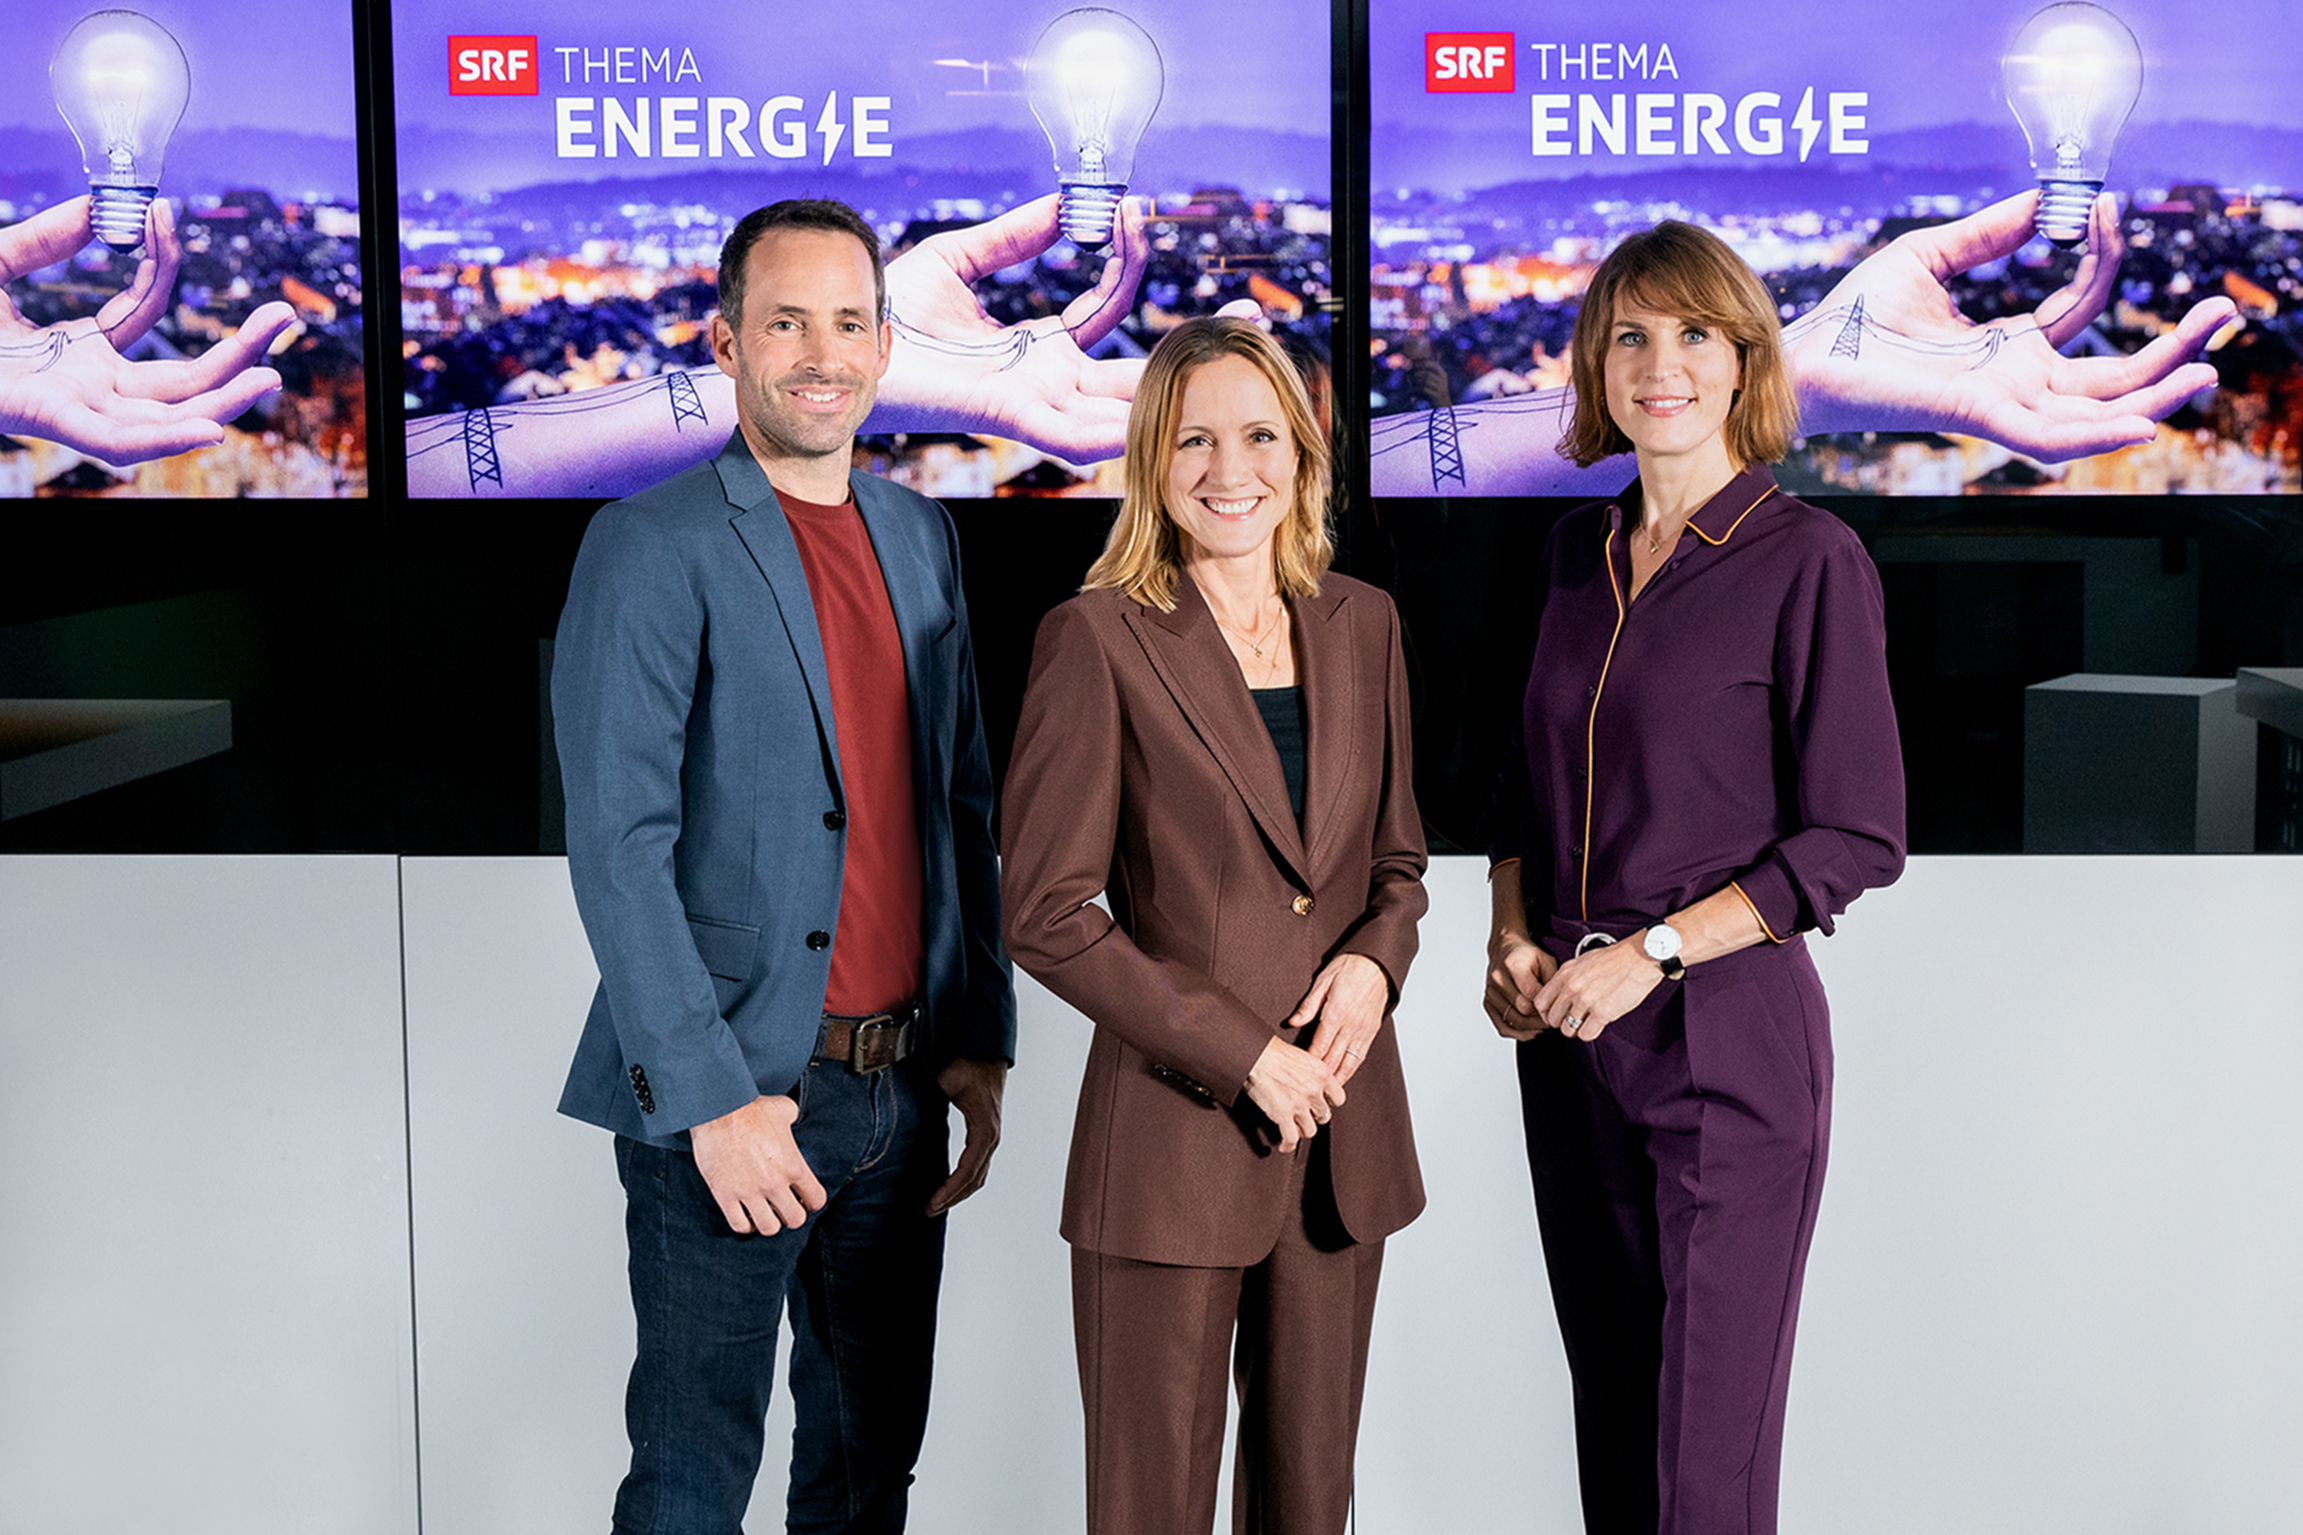 SRF Thema Energieam 16.11.2022 Das Moderationsteam: Stefan Flury, Barbara Lüthi und Cornelia Boesch